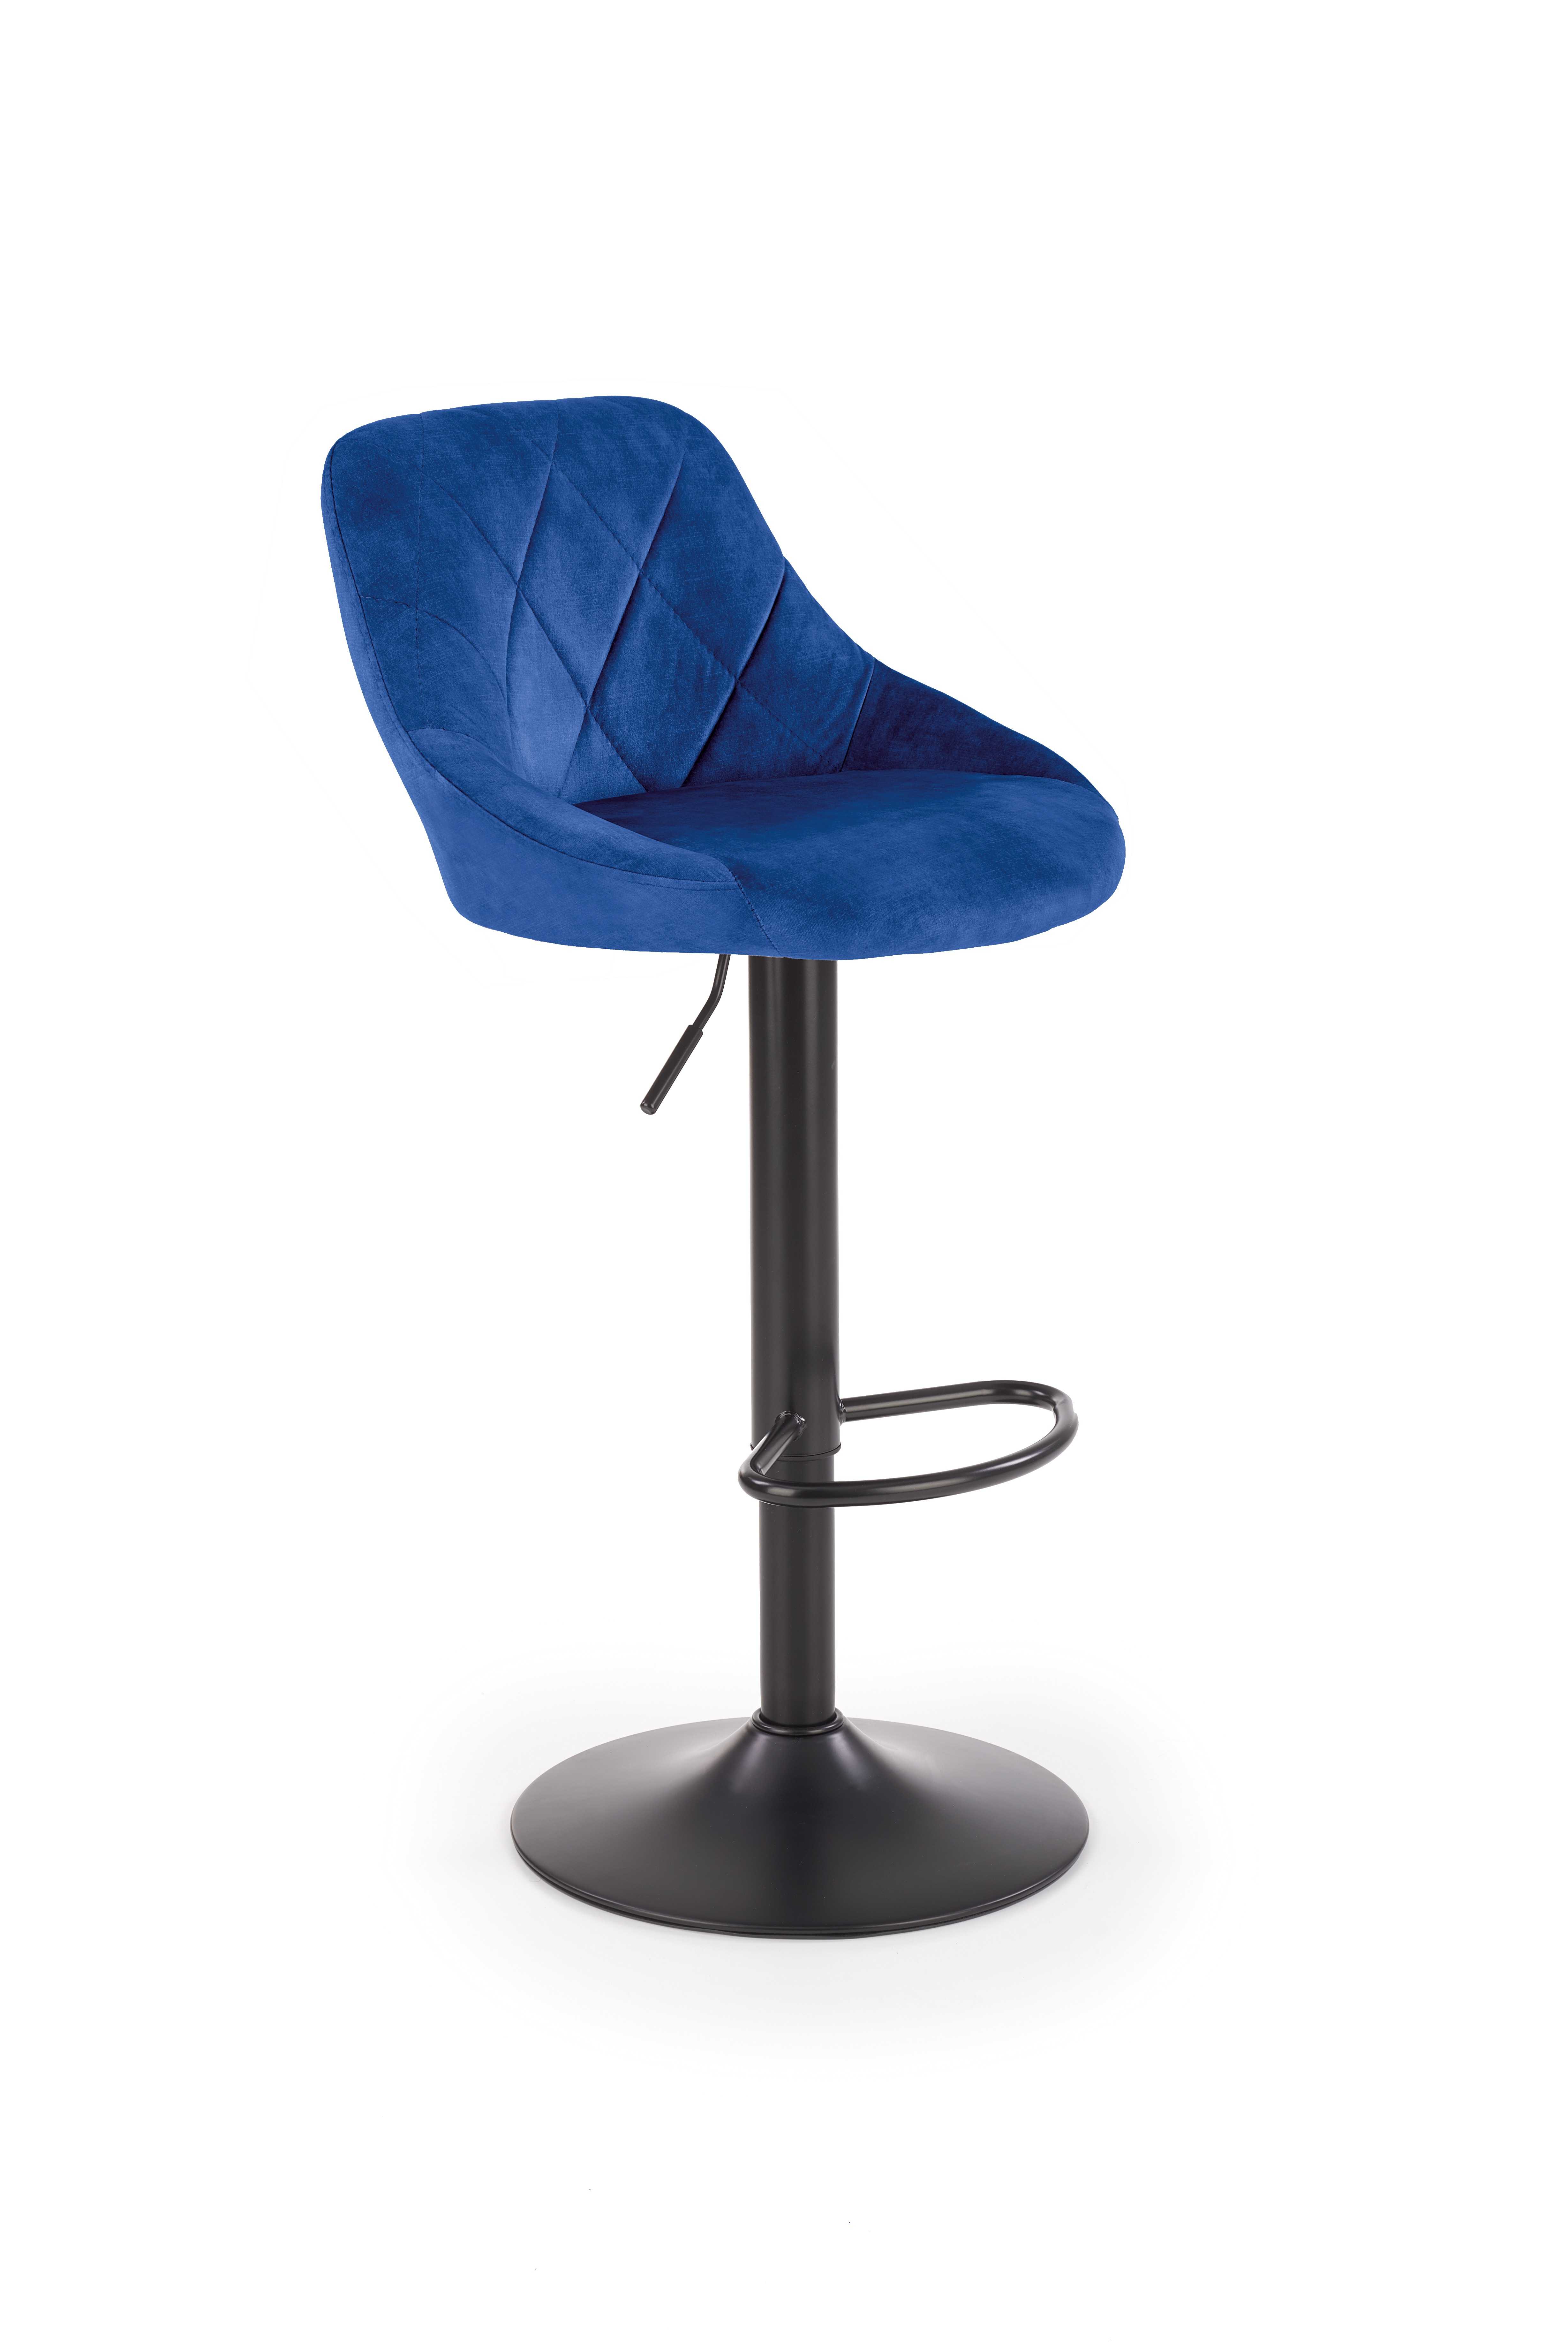 H101 Barová židle tmavě modrý h101 Barová židle tmavě modrý